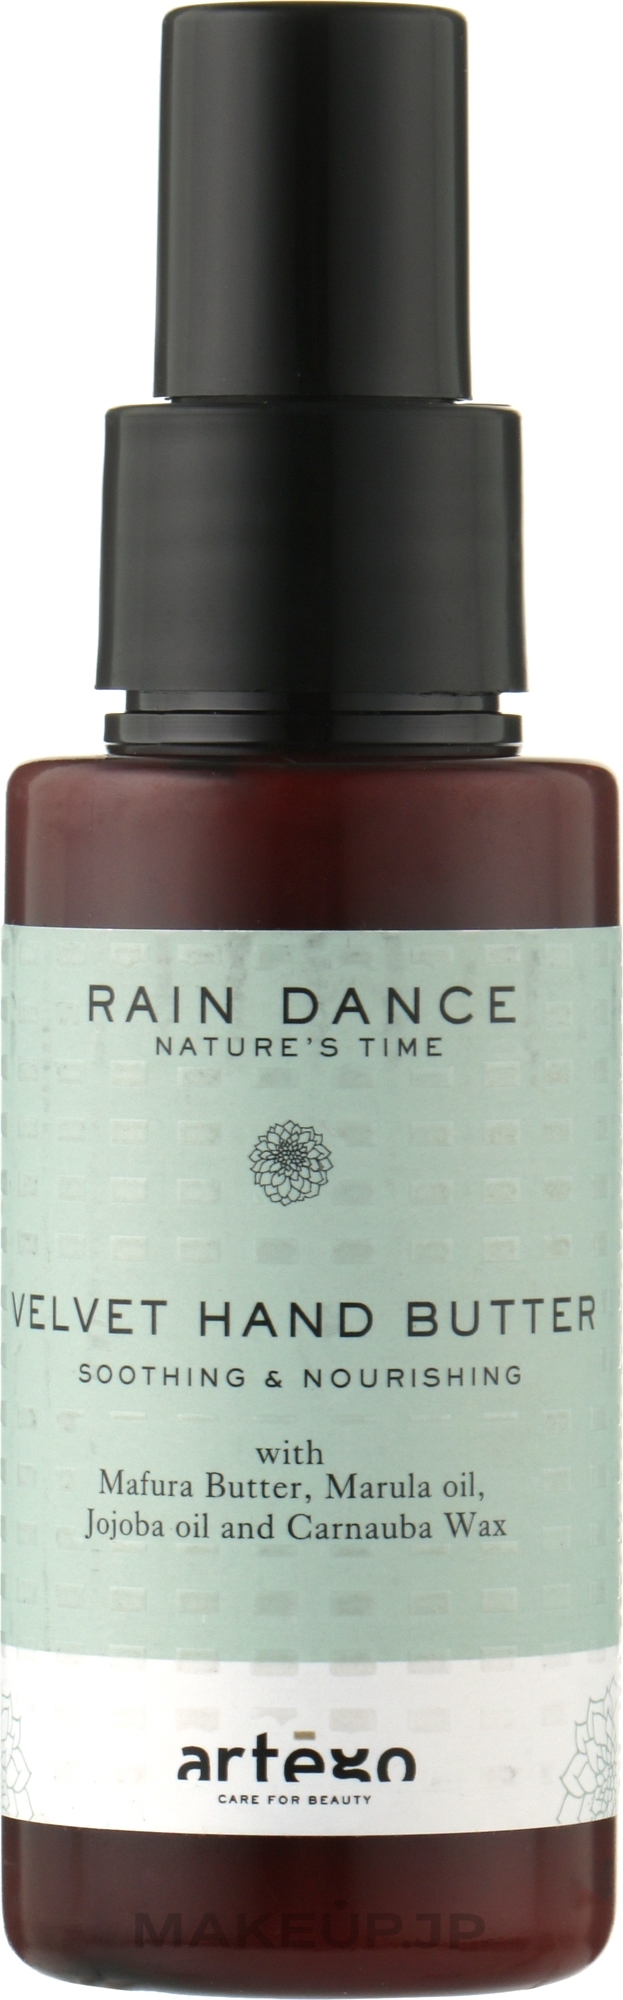 Hand Butter - Artego Rain Dance Velvet Hand Butter — photo 75 ml